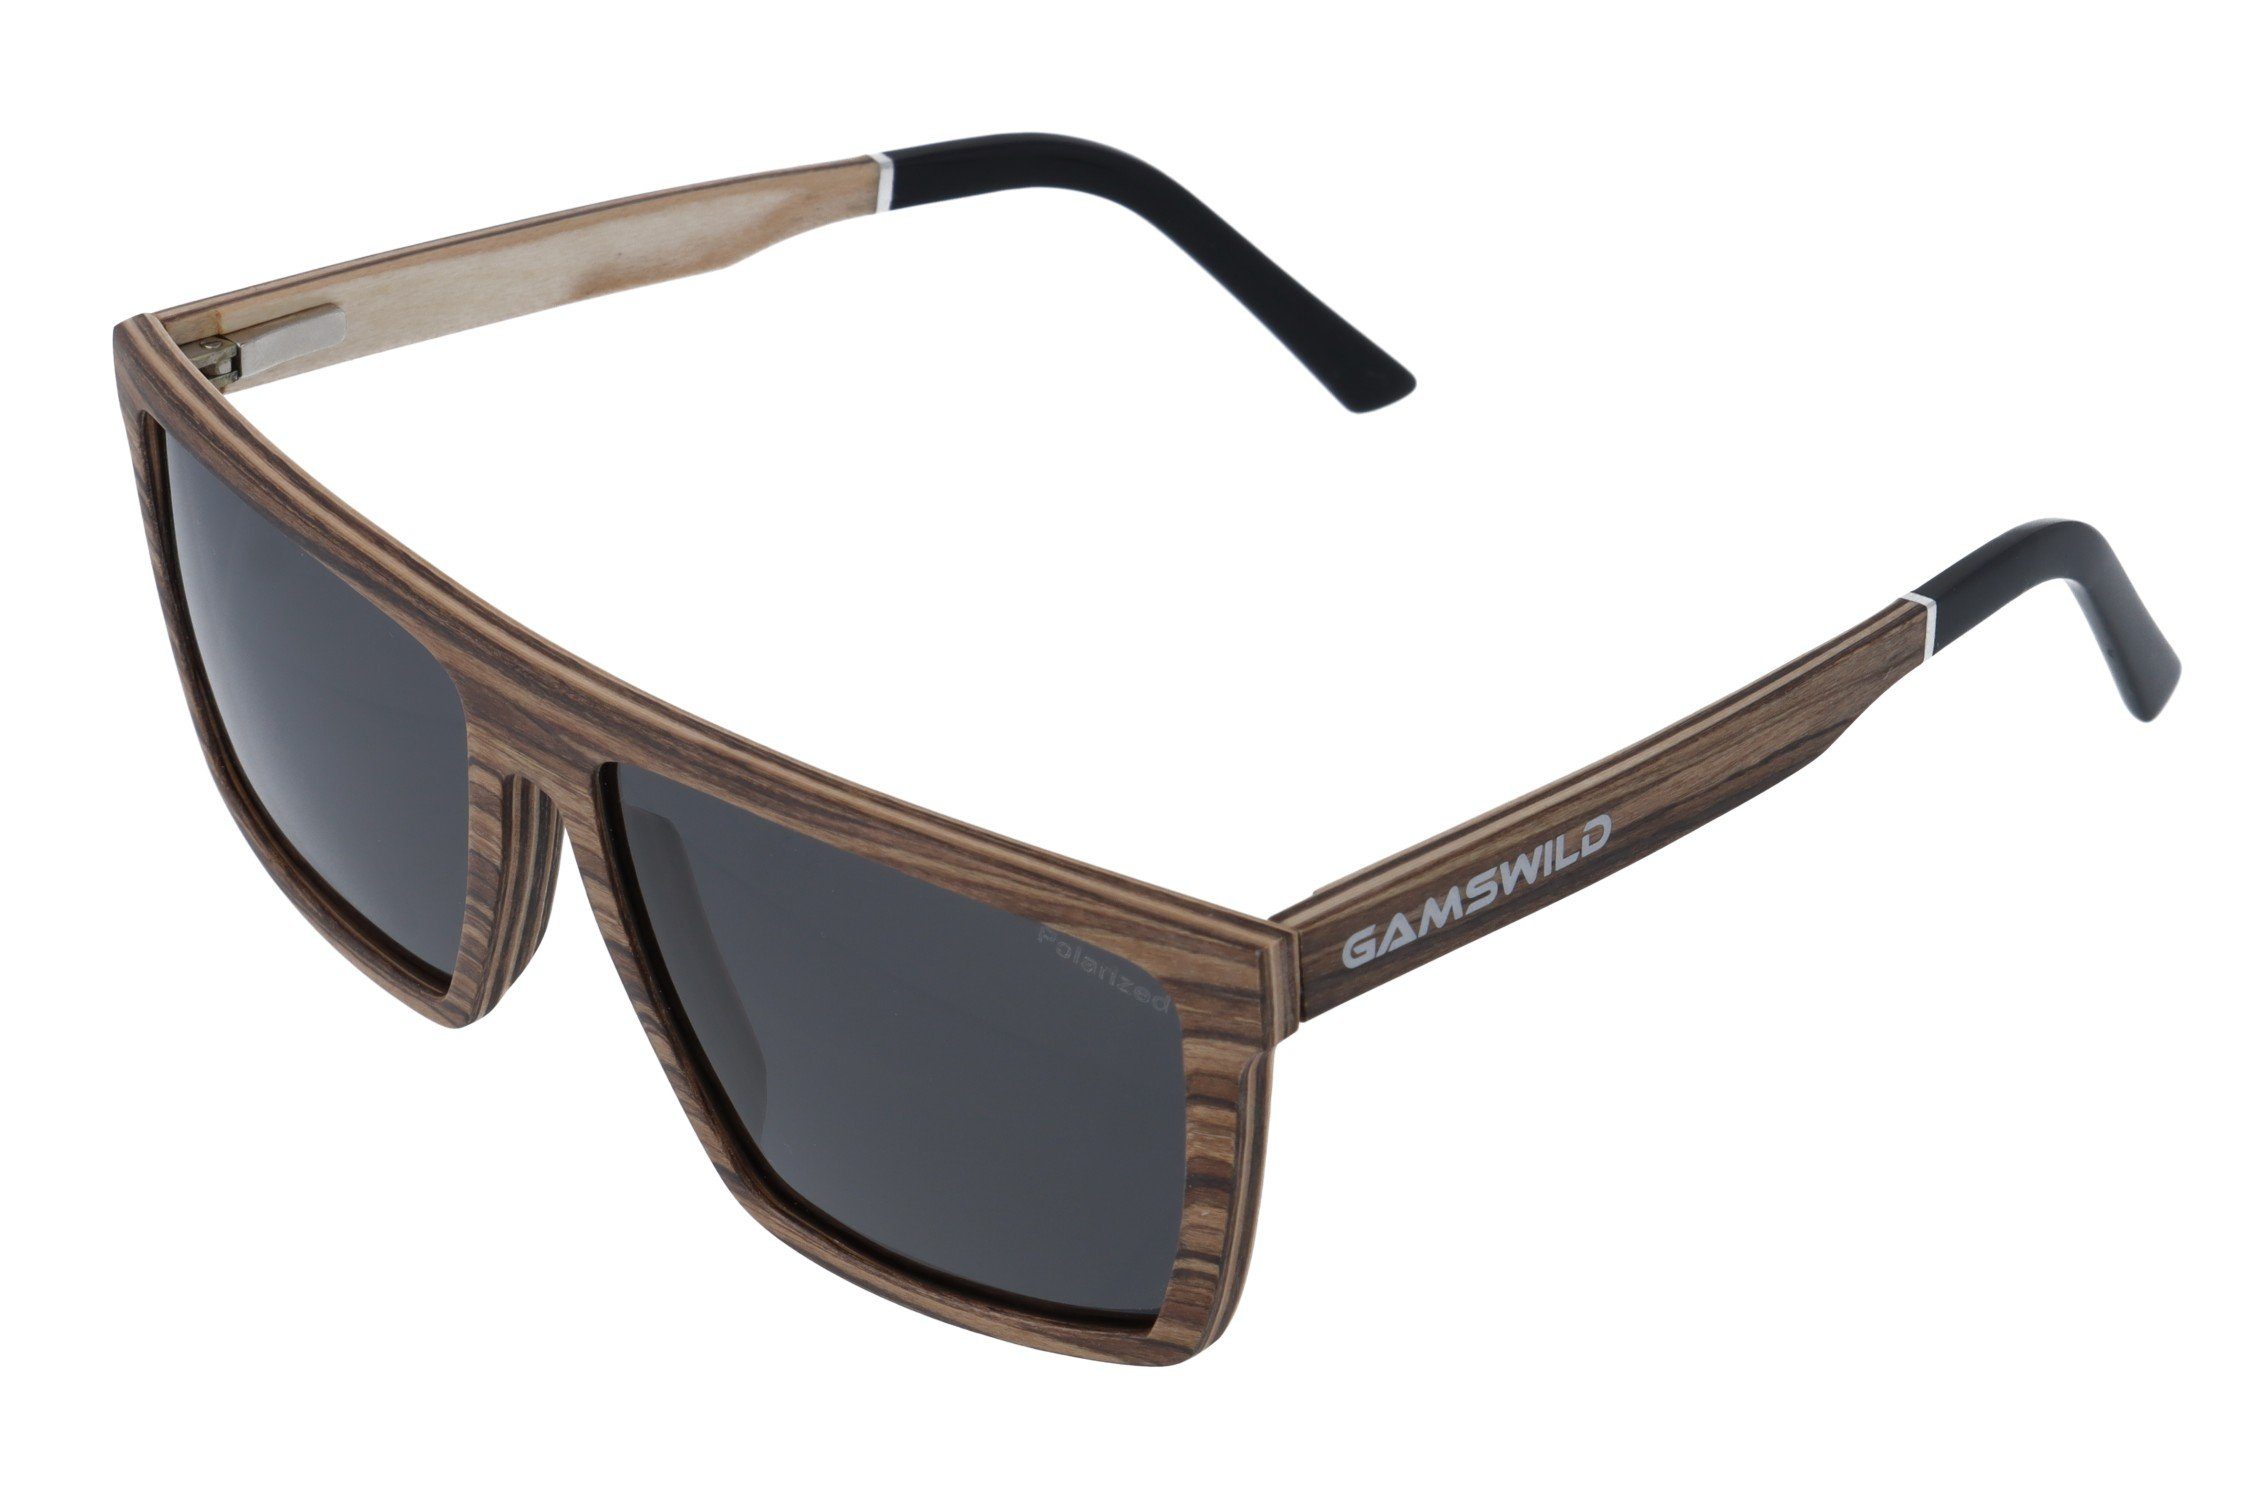 Gamswild Sonnenbrille UV400 GAMSSTYLE Holzbrille polarisierte Gläser getönt  Damen Herren Modell WM0010, braun, schwarz